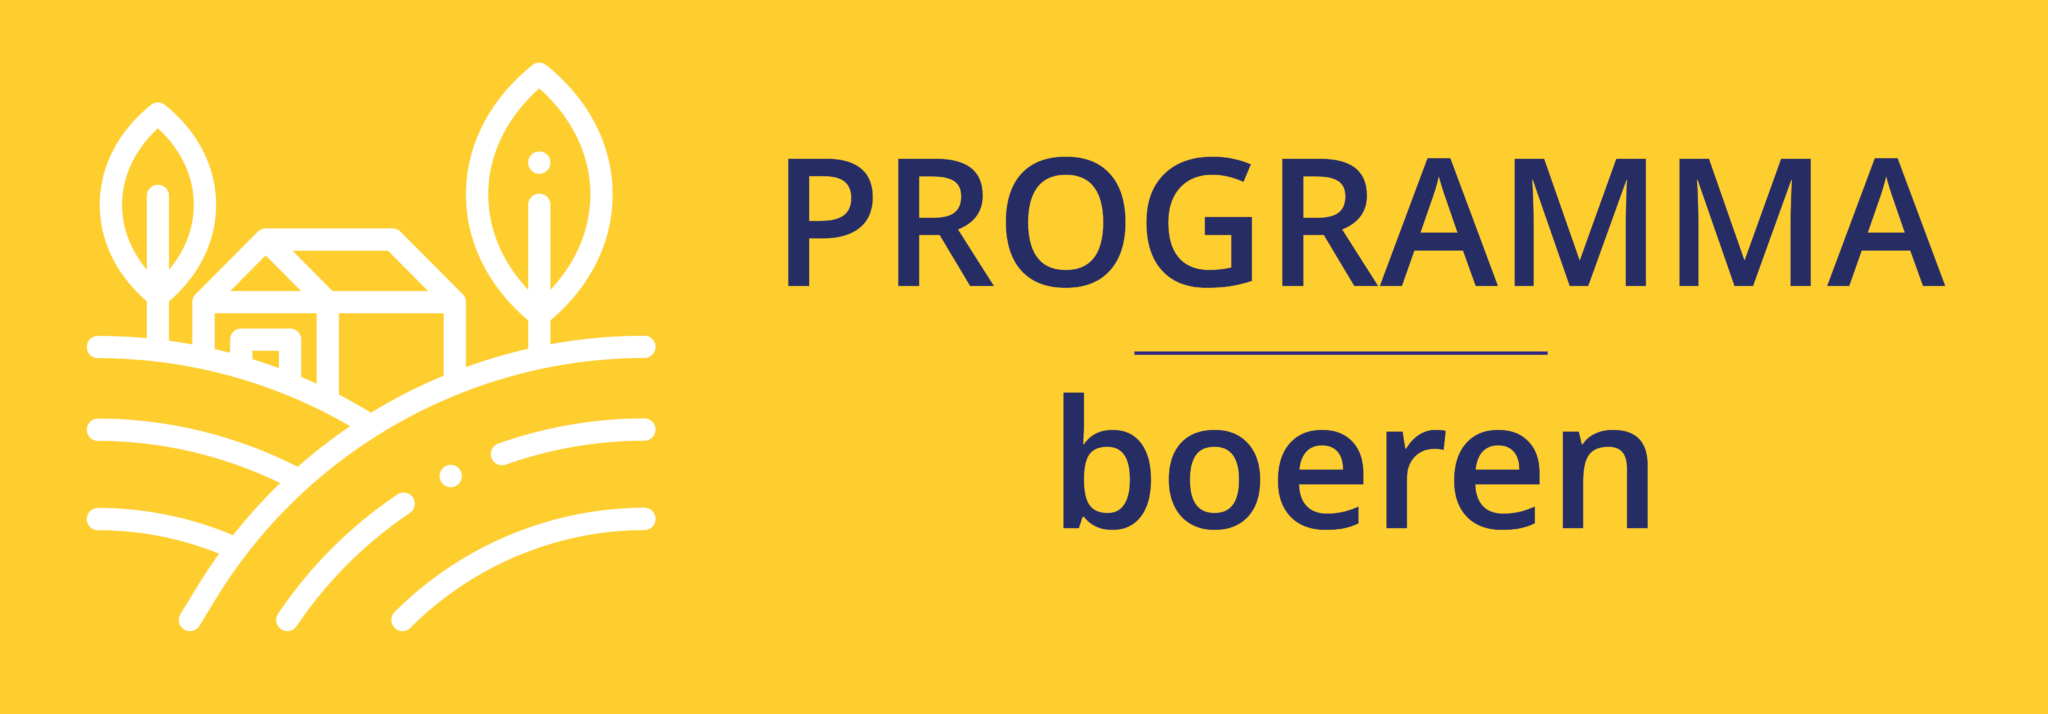 BBB_Verkiezingsprogramma_knoppen_boeren-2048x714